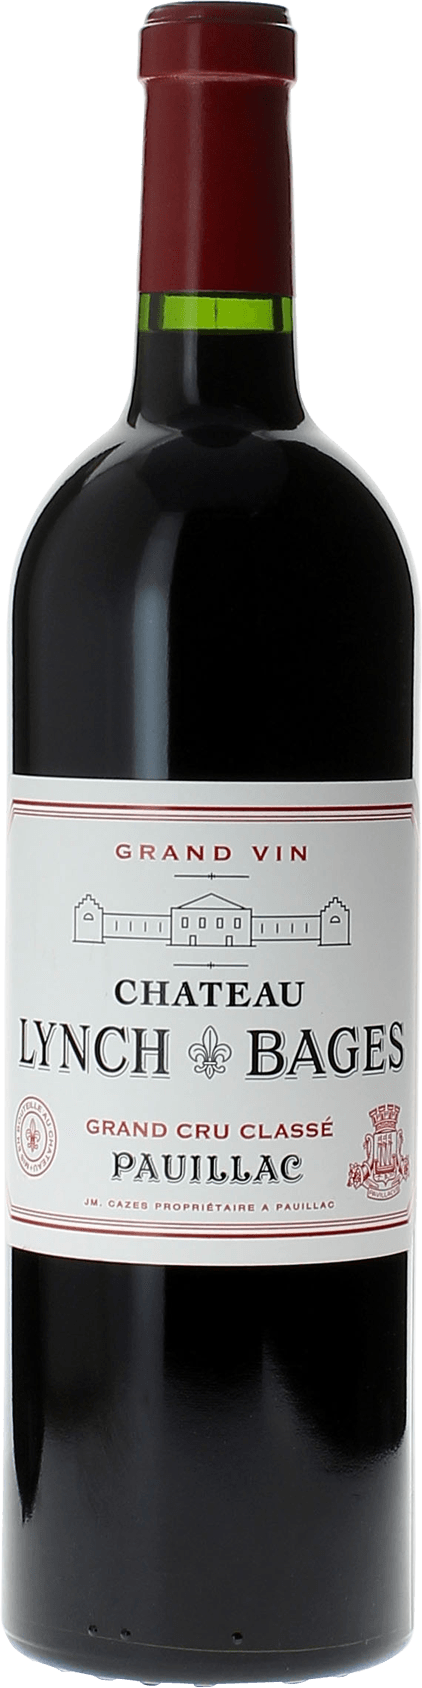 Lynch bages 2008 5 me Grand cru class Pauillac, Bordeaux rouge